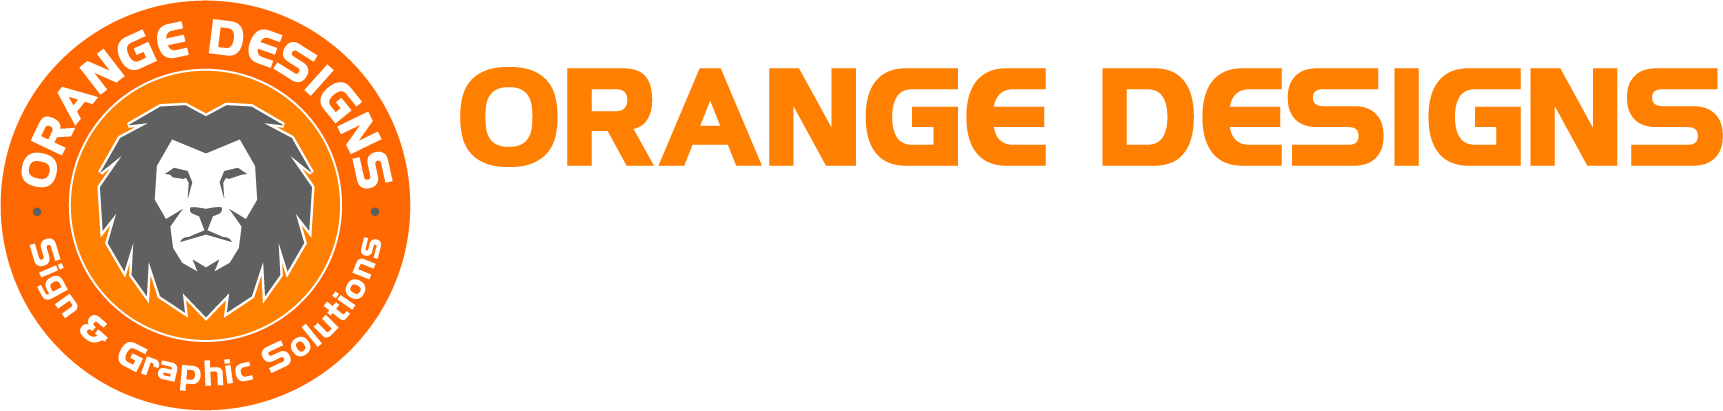 ORANGE DESIGNS | Sign & Graphic Solutions